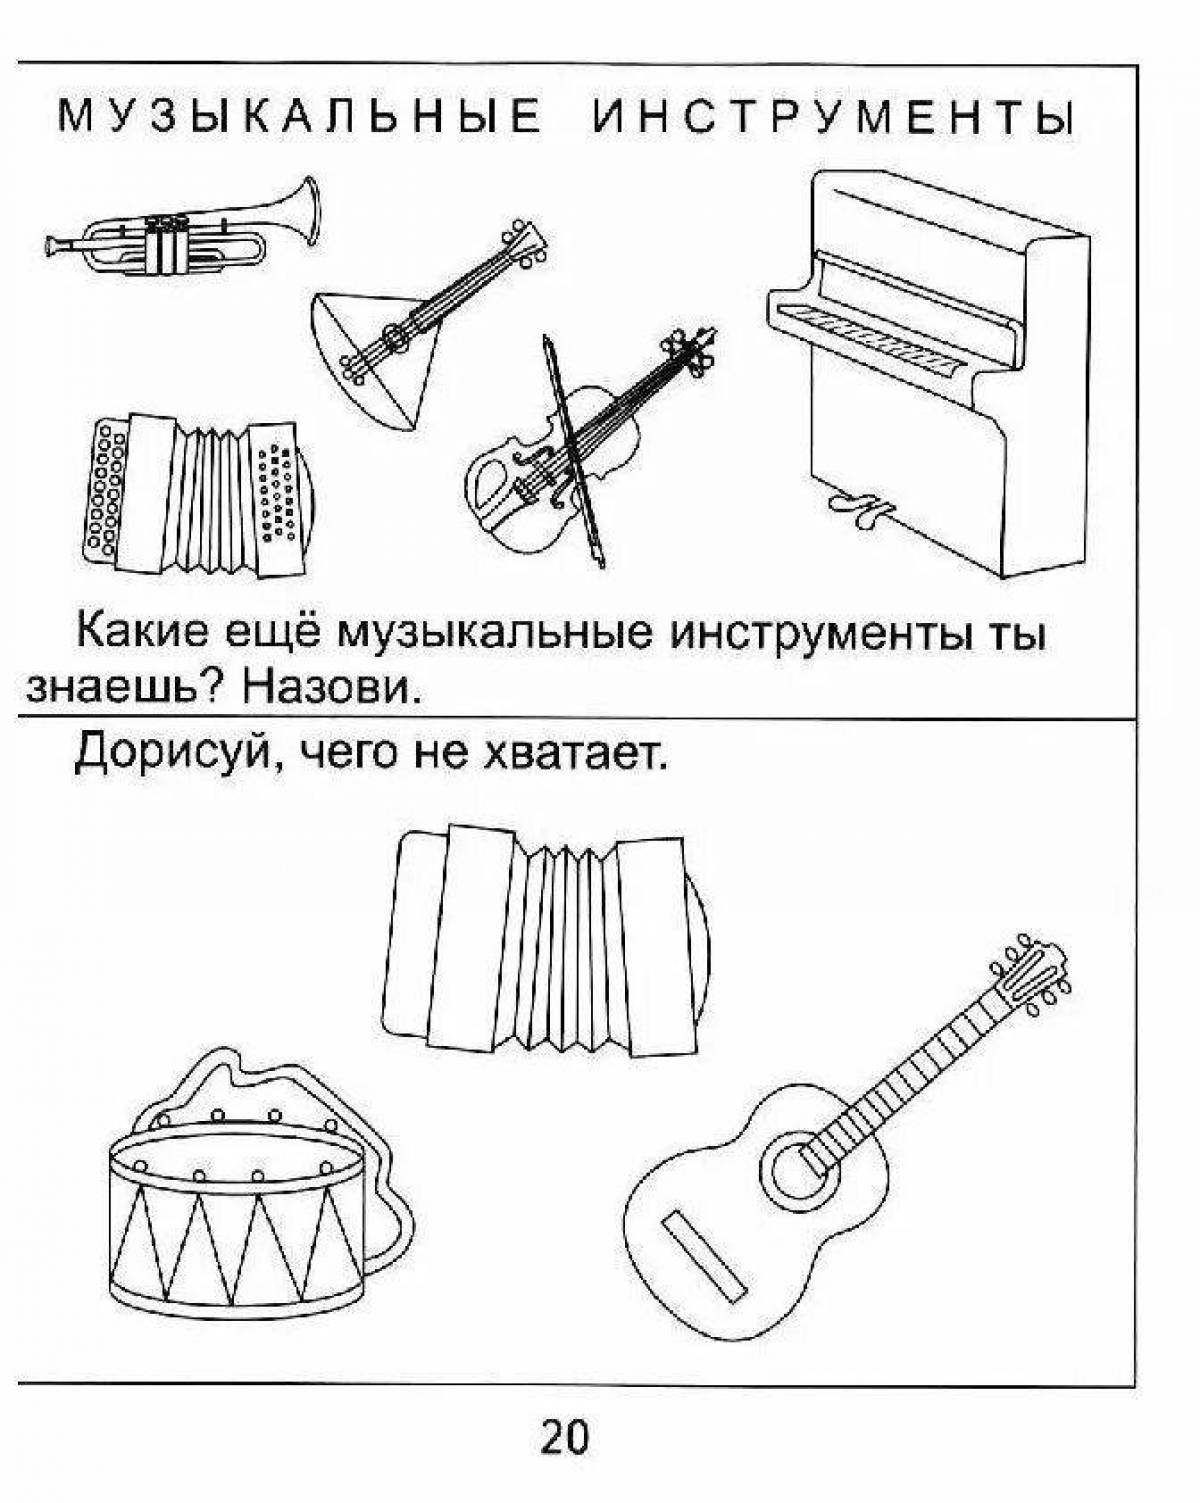 Музыкальные инструменты задачи. Музыкальные инструменты задания для детей. Задания по инструментам для дошкольников. Музыкальные инструменты задания для дошкольников. Музыкальные инструменты рисунки.